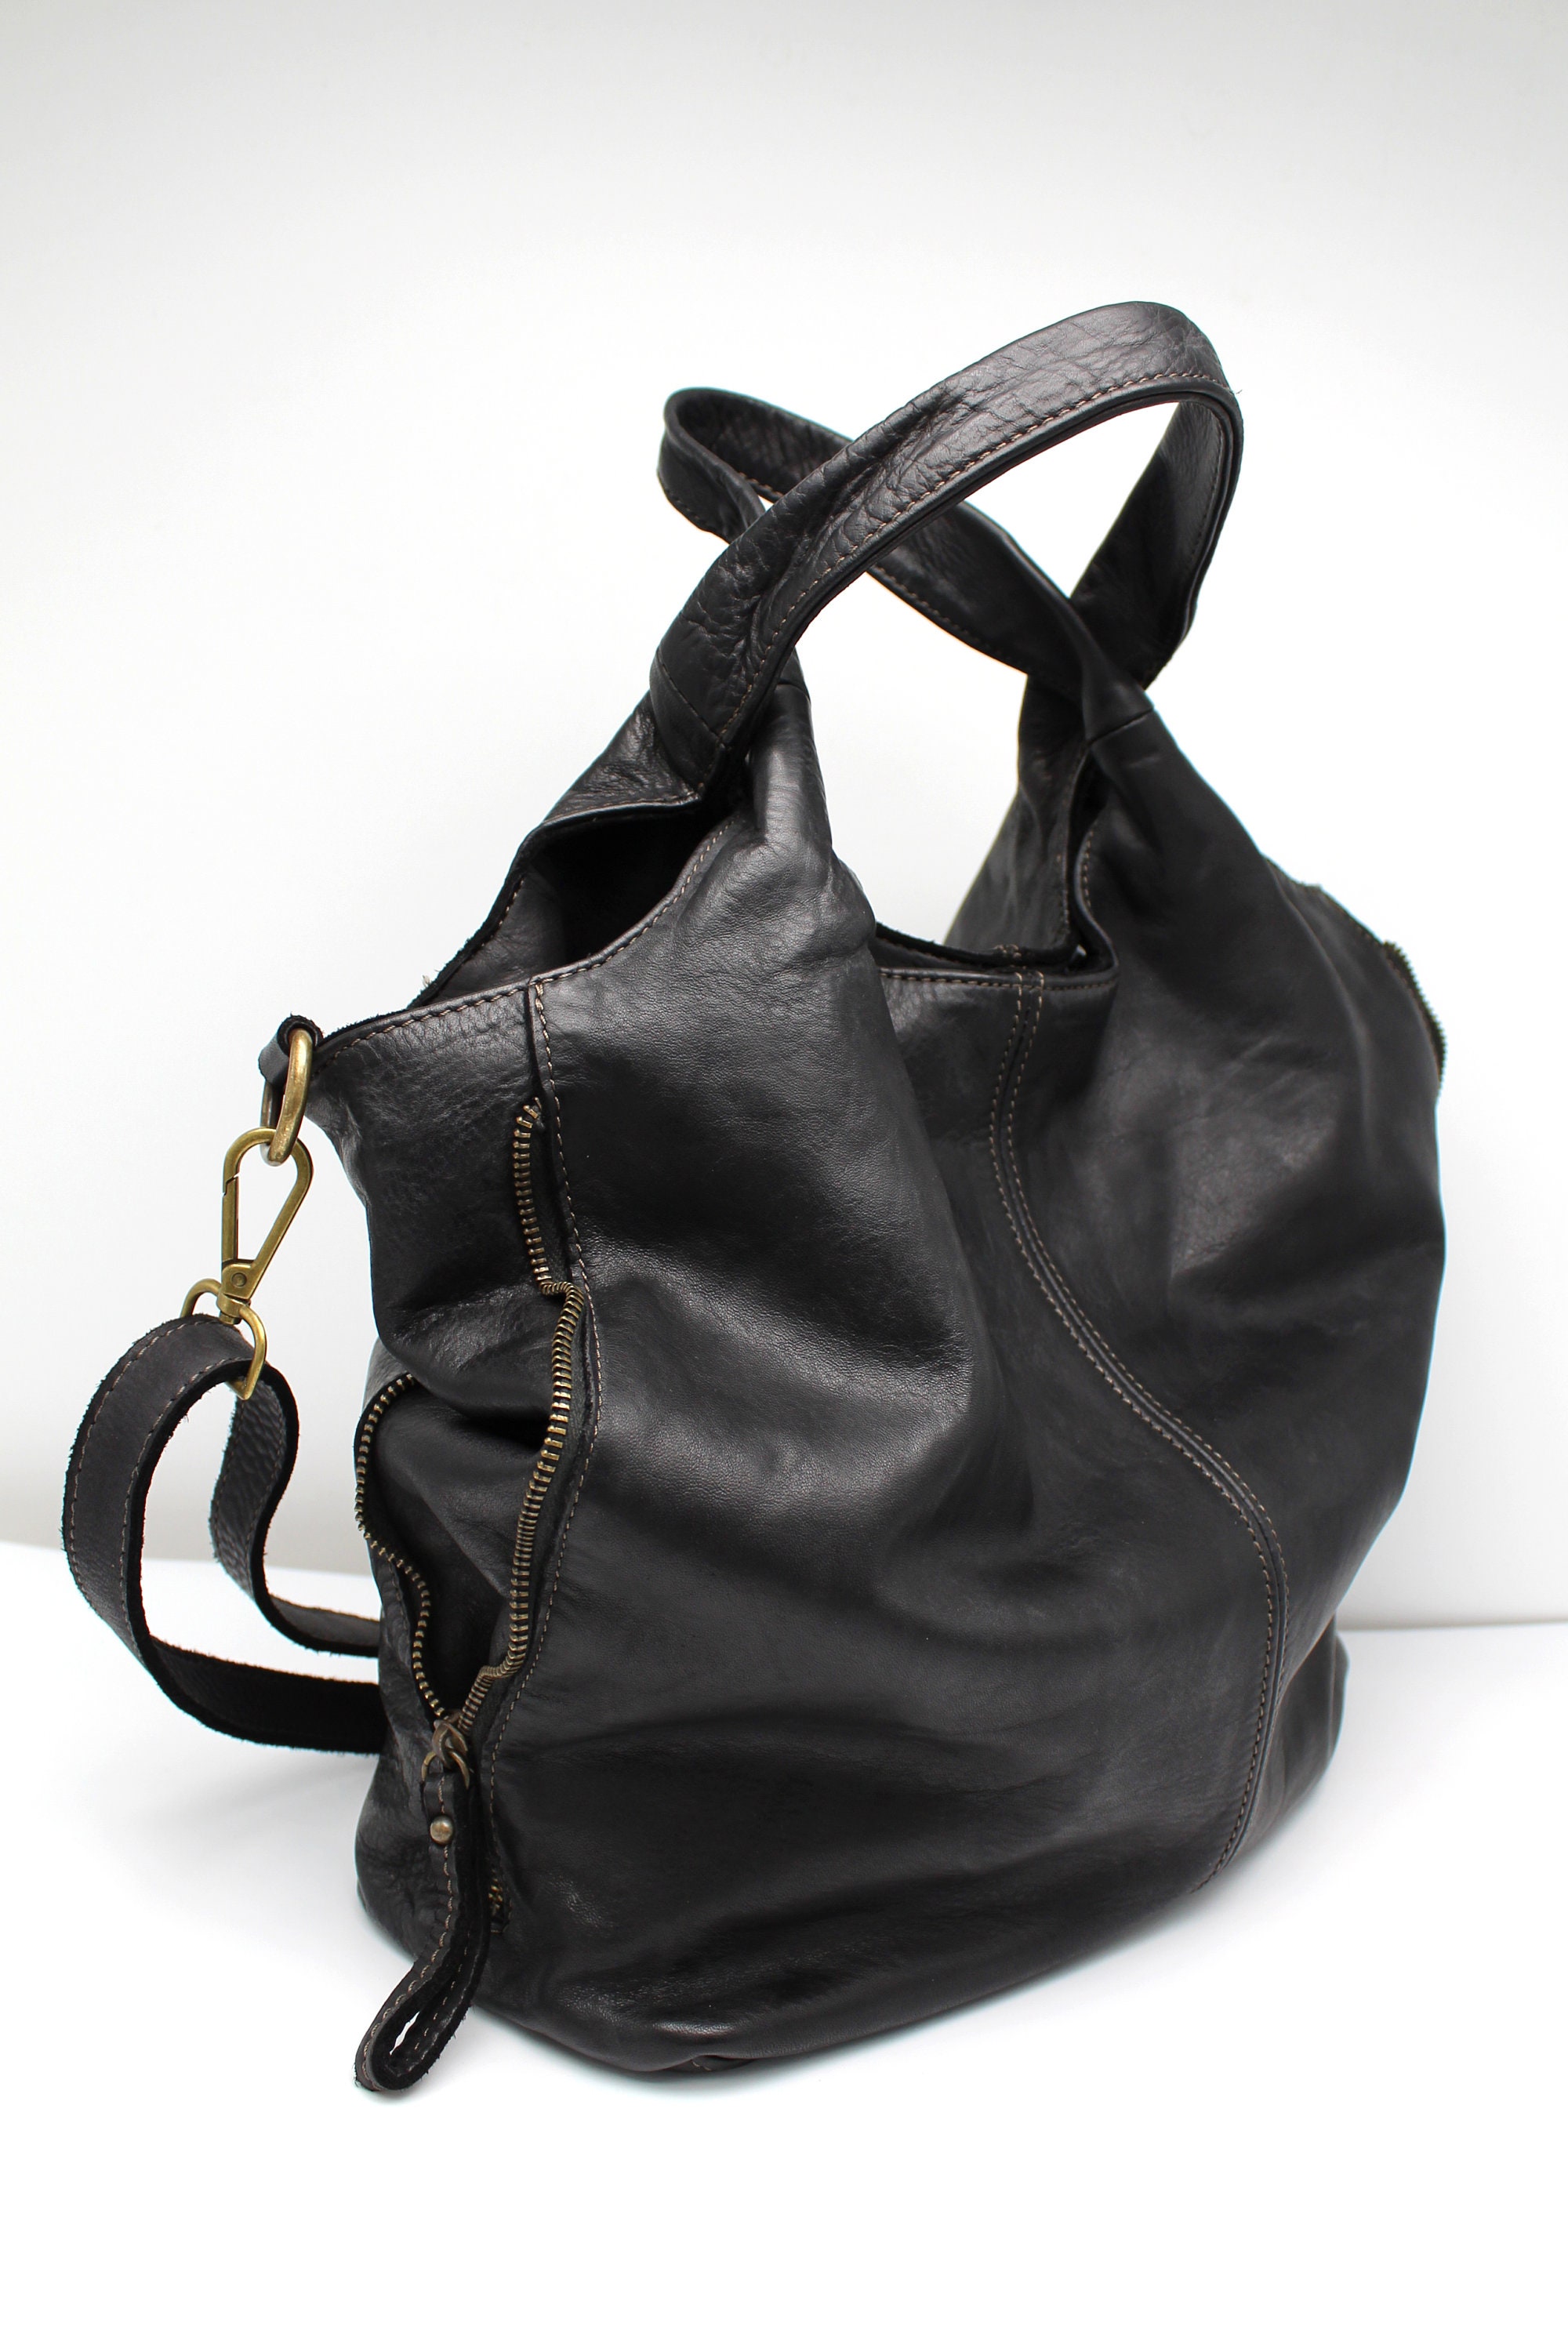 Leather Bag Soft Leather Shoulder Bag Leather Handbag Black - Etsy Canada